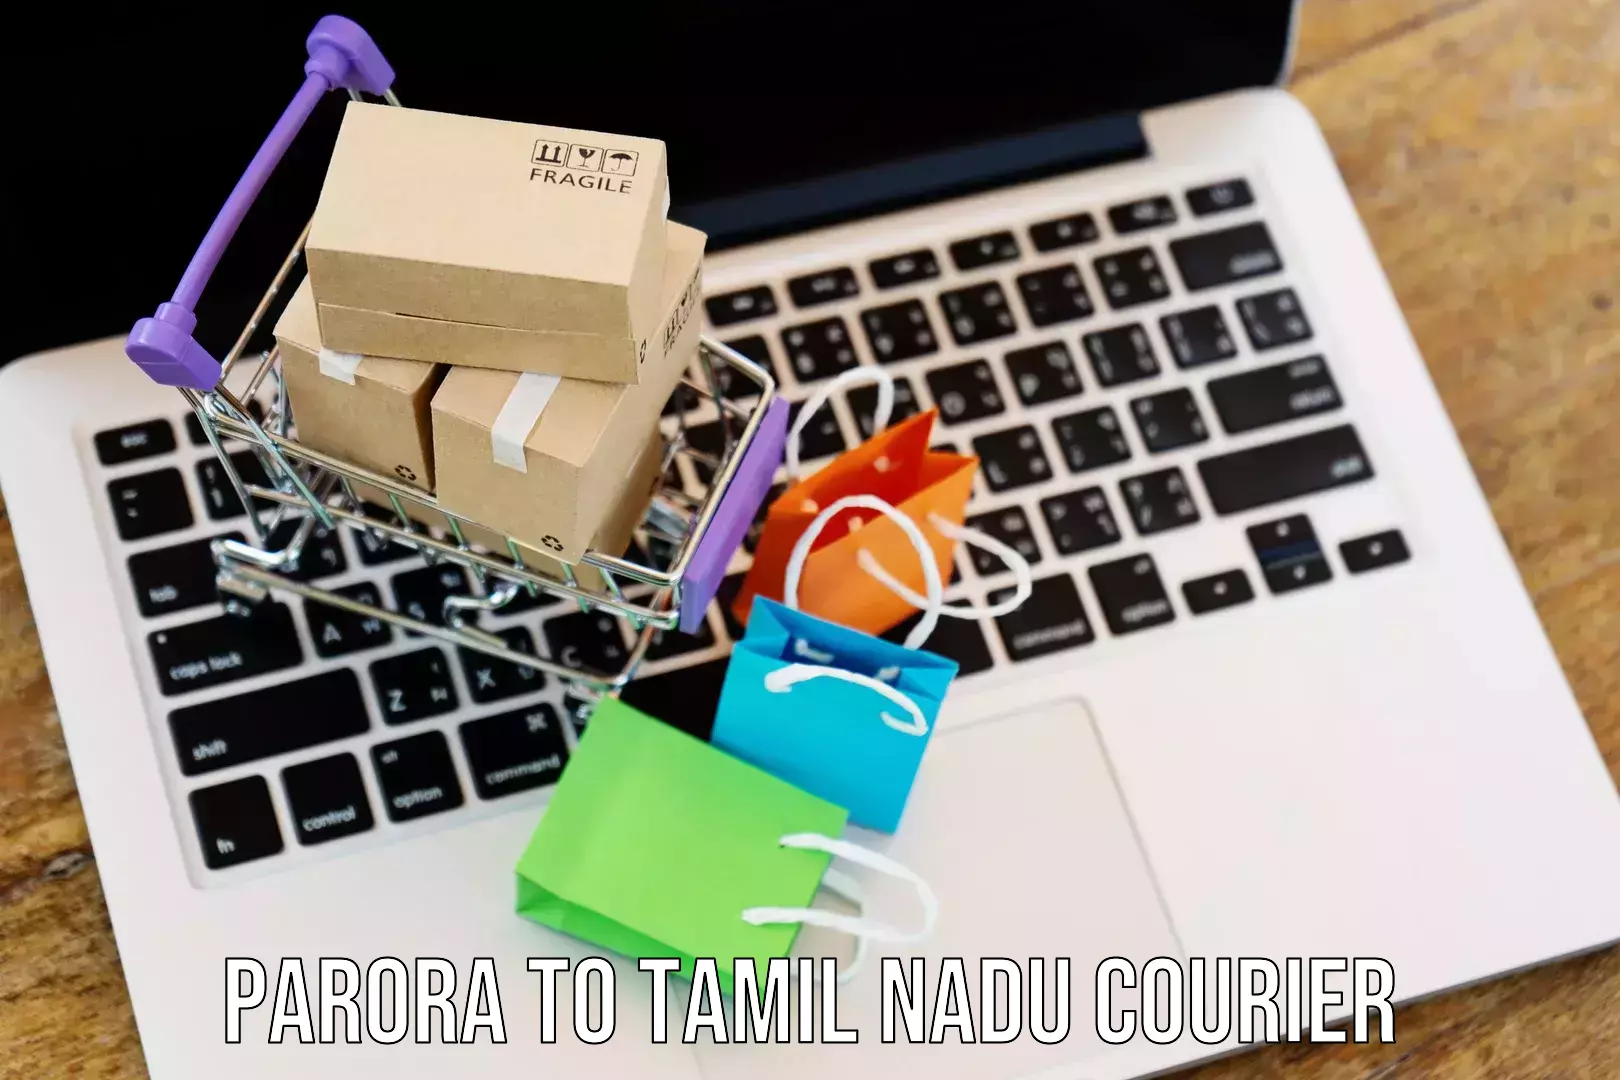 Efficient shipping platforms in Parora to Tamil Nadu